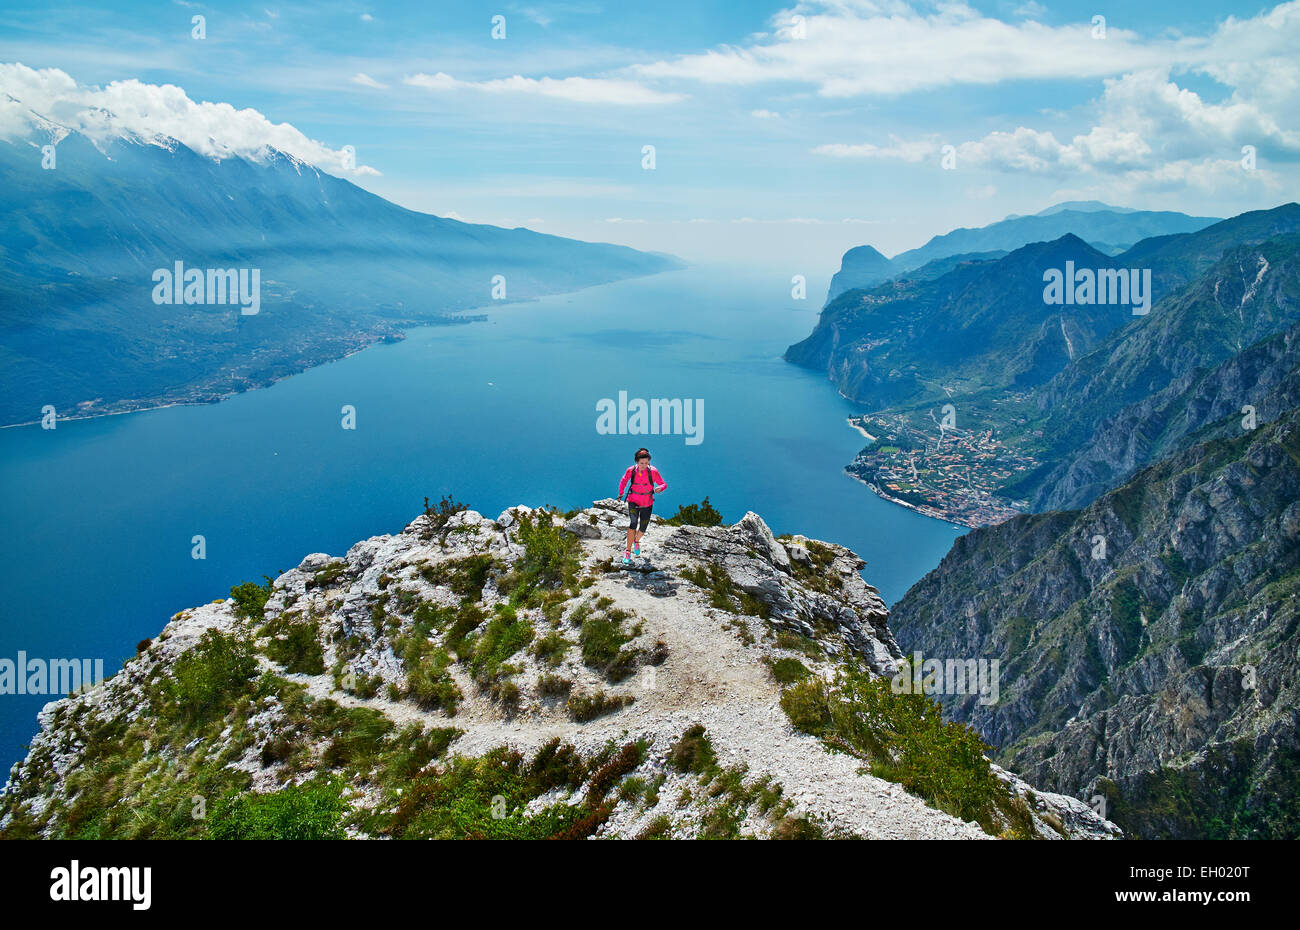 L'Italia, Trentino, donna in esecuzione sul picco di montagna al lago di Garda Foto Stock